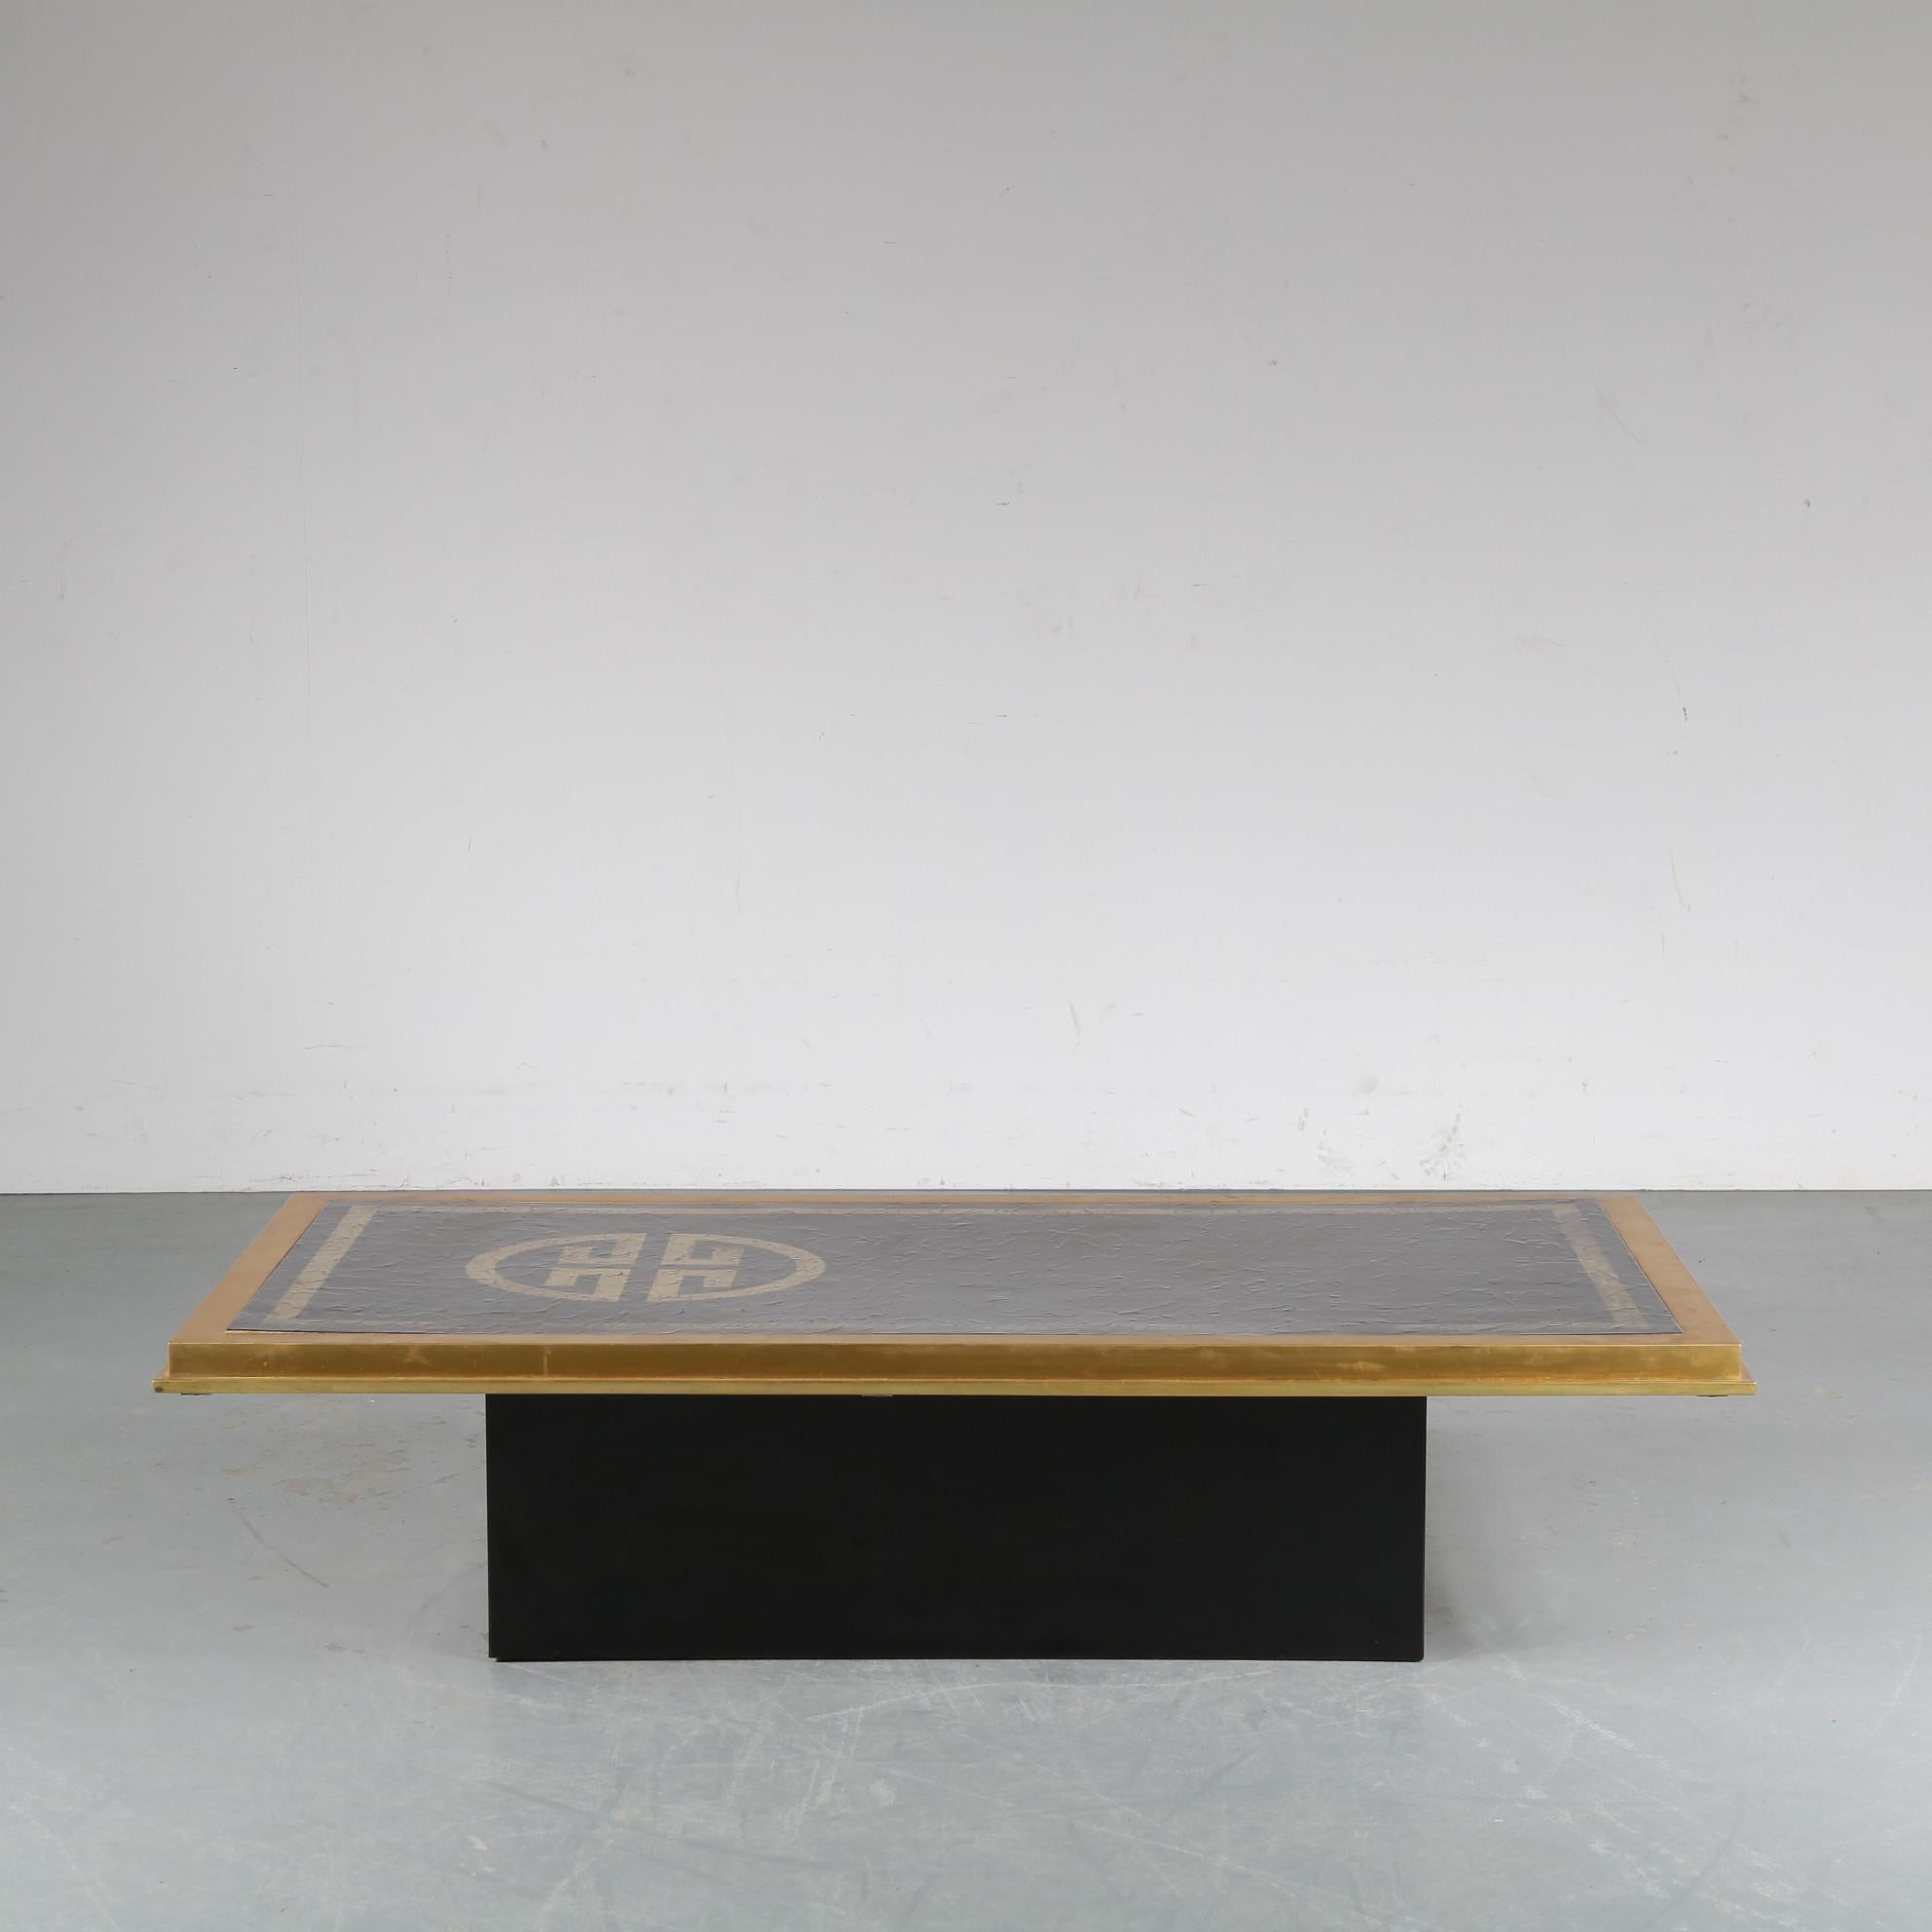 Une table basse unique, fabriquée par Denisco en Italie vers 1970.

Il présente une base en bois laqué noir et un plateau en laiton et acier émaillé, avec un motif unique sur le plateau. Le noir et le laiton sont une combinaison très attrayante